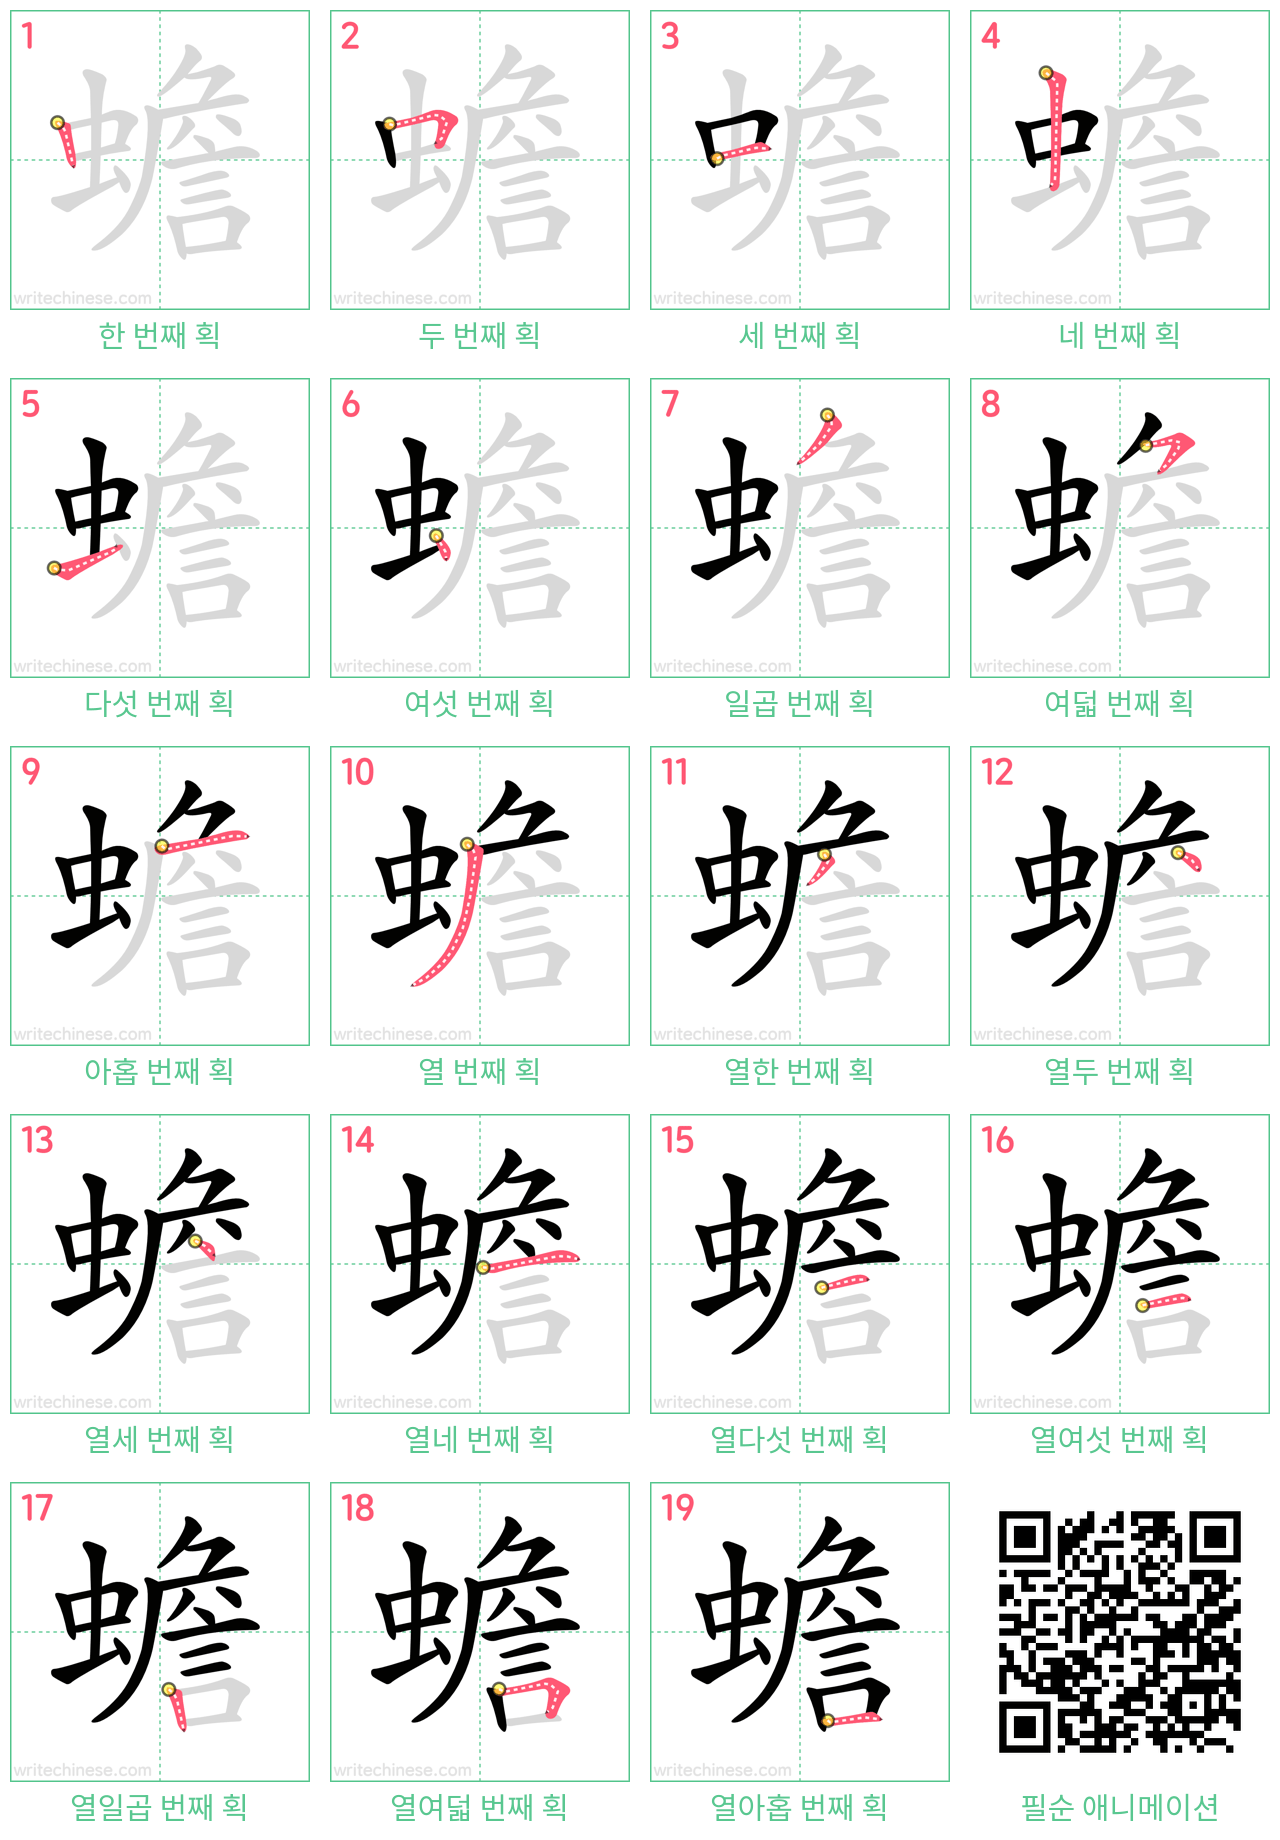 蟾 step-by-step stroke order diagrams